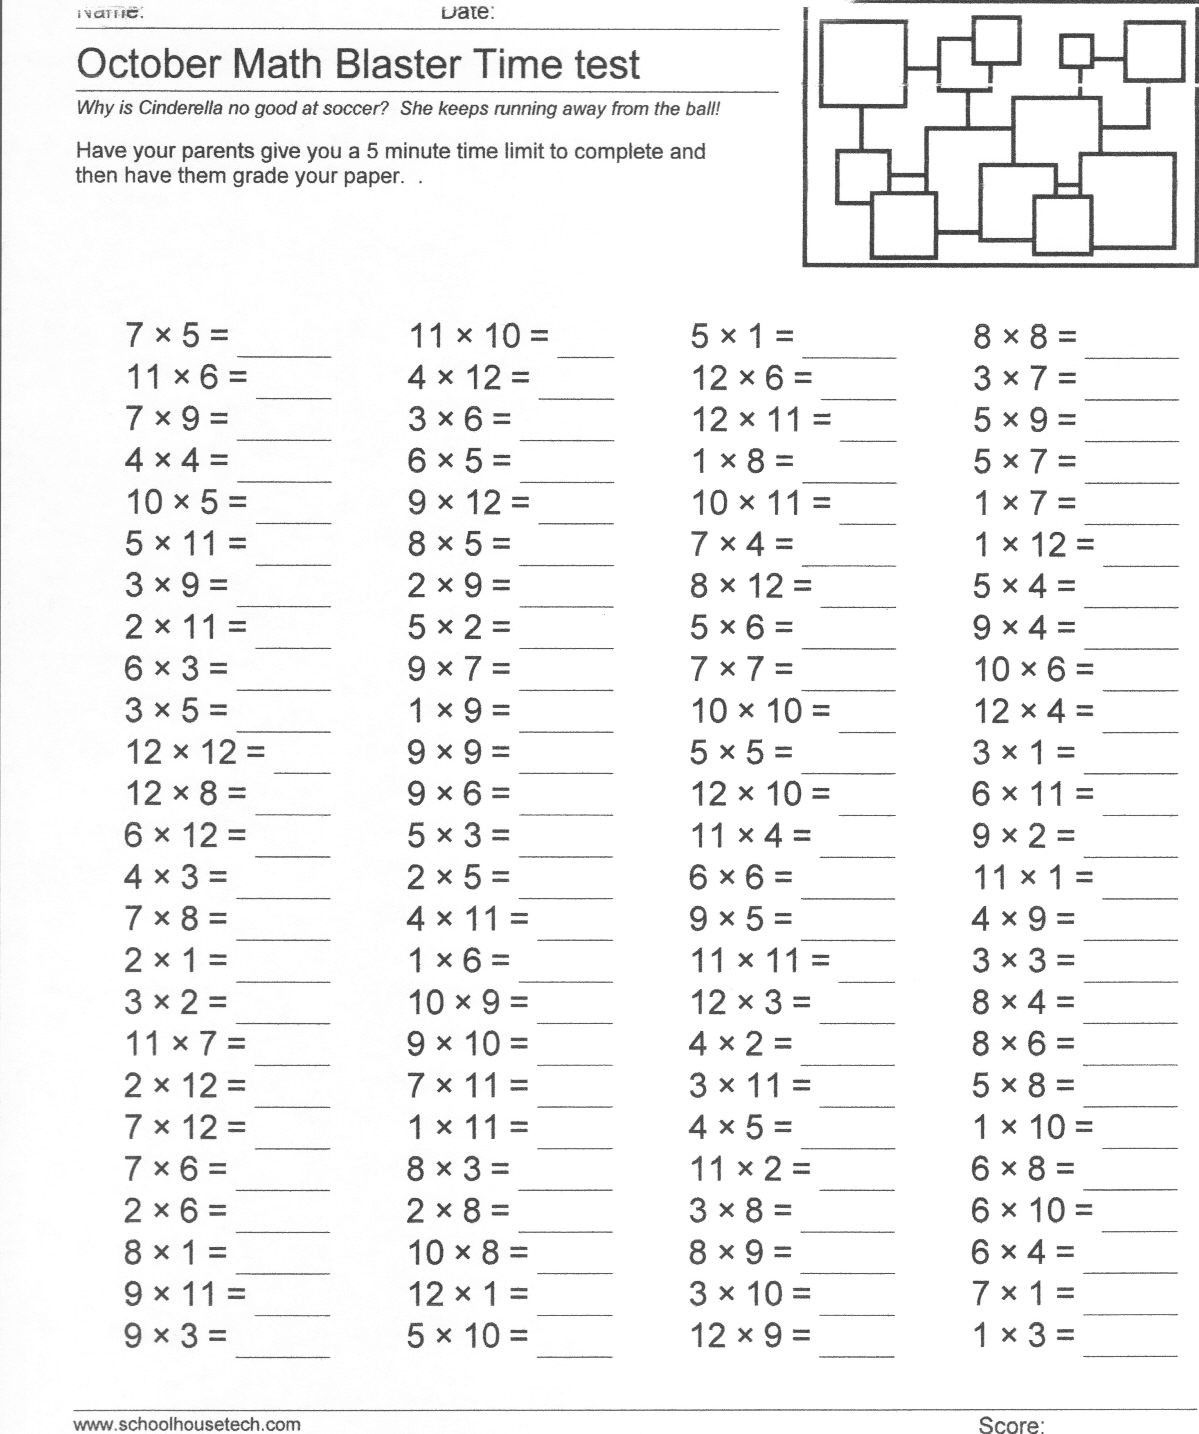 multiplication-worksheets-printable-printable-worksheets